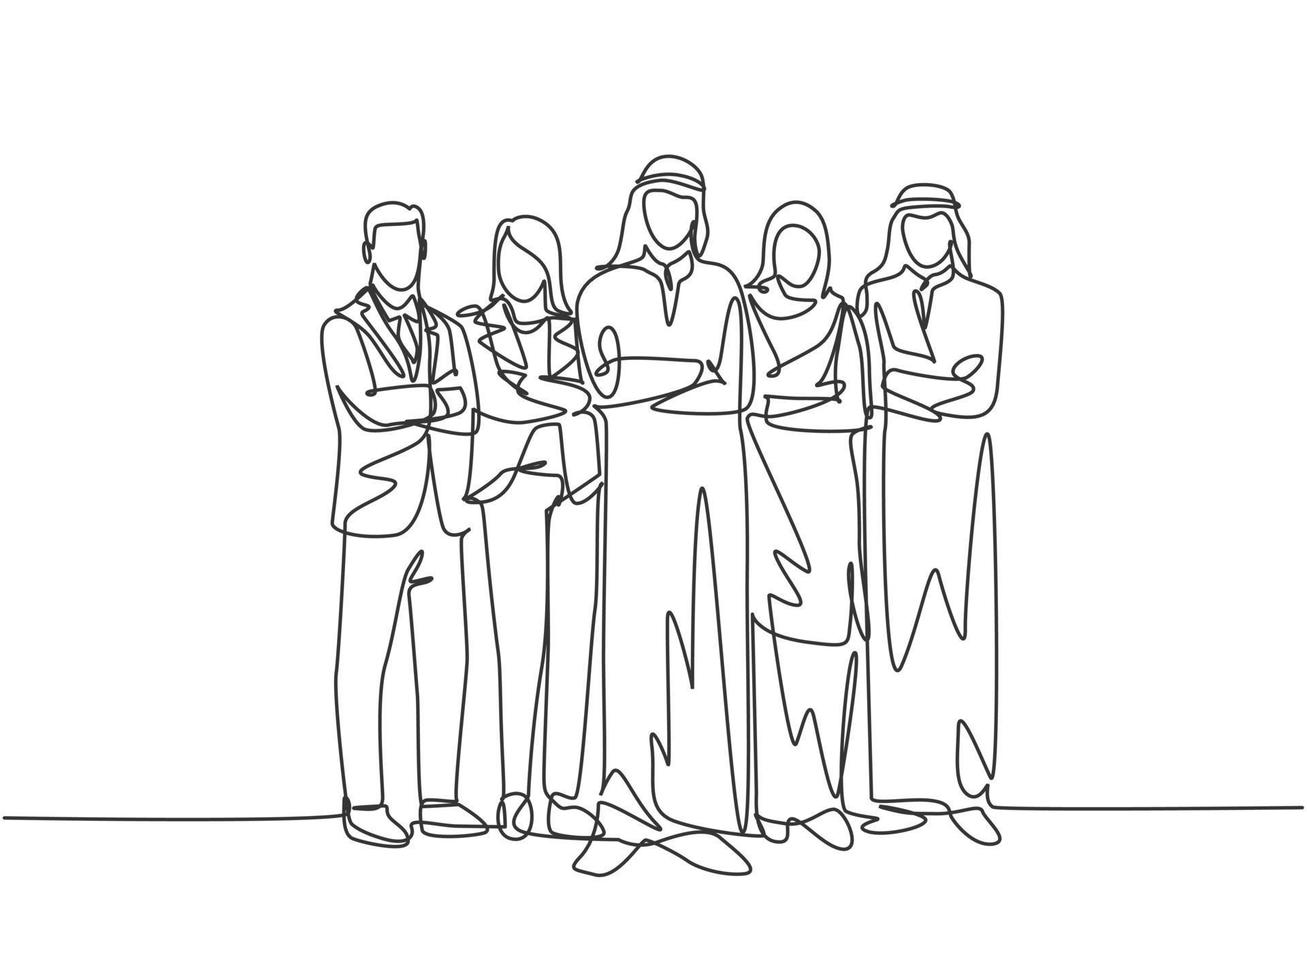 un unico disegno a linea continua di giovani dipendenti musulmani maschi e femmine si allineano insieme in ufficio. arabo medio oriente panno shmagh, thawb, hijab. illustrazione vettoriale di disegno di una linea di disegno